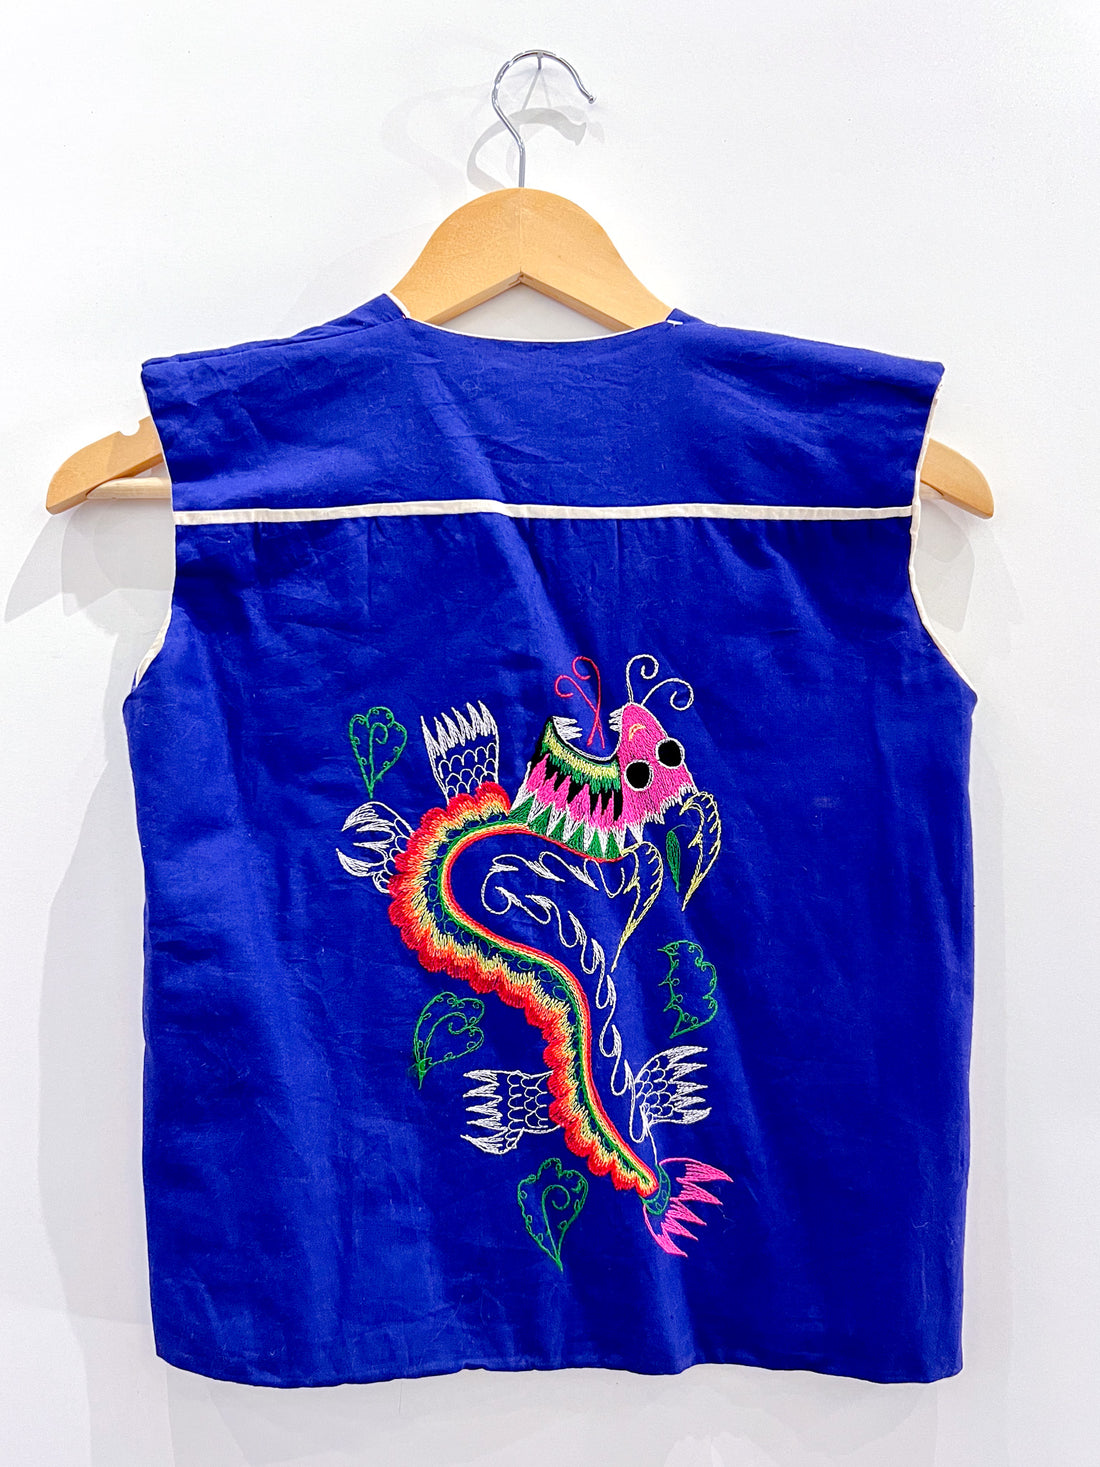 Vintage Blue Embroidered Vest